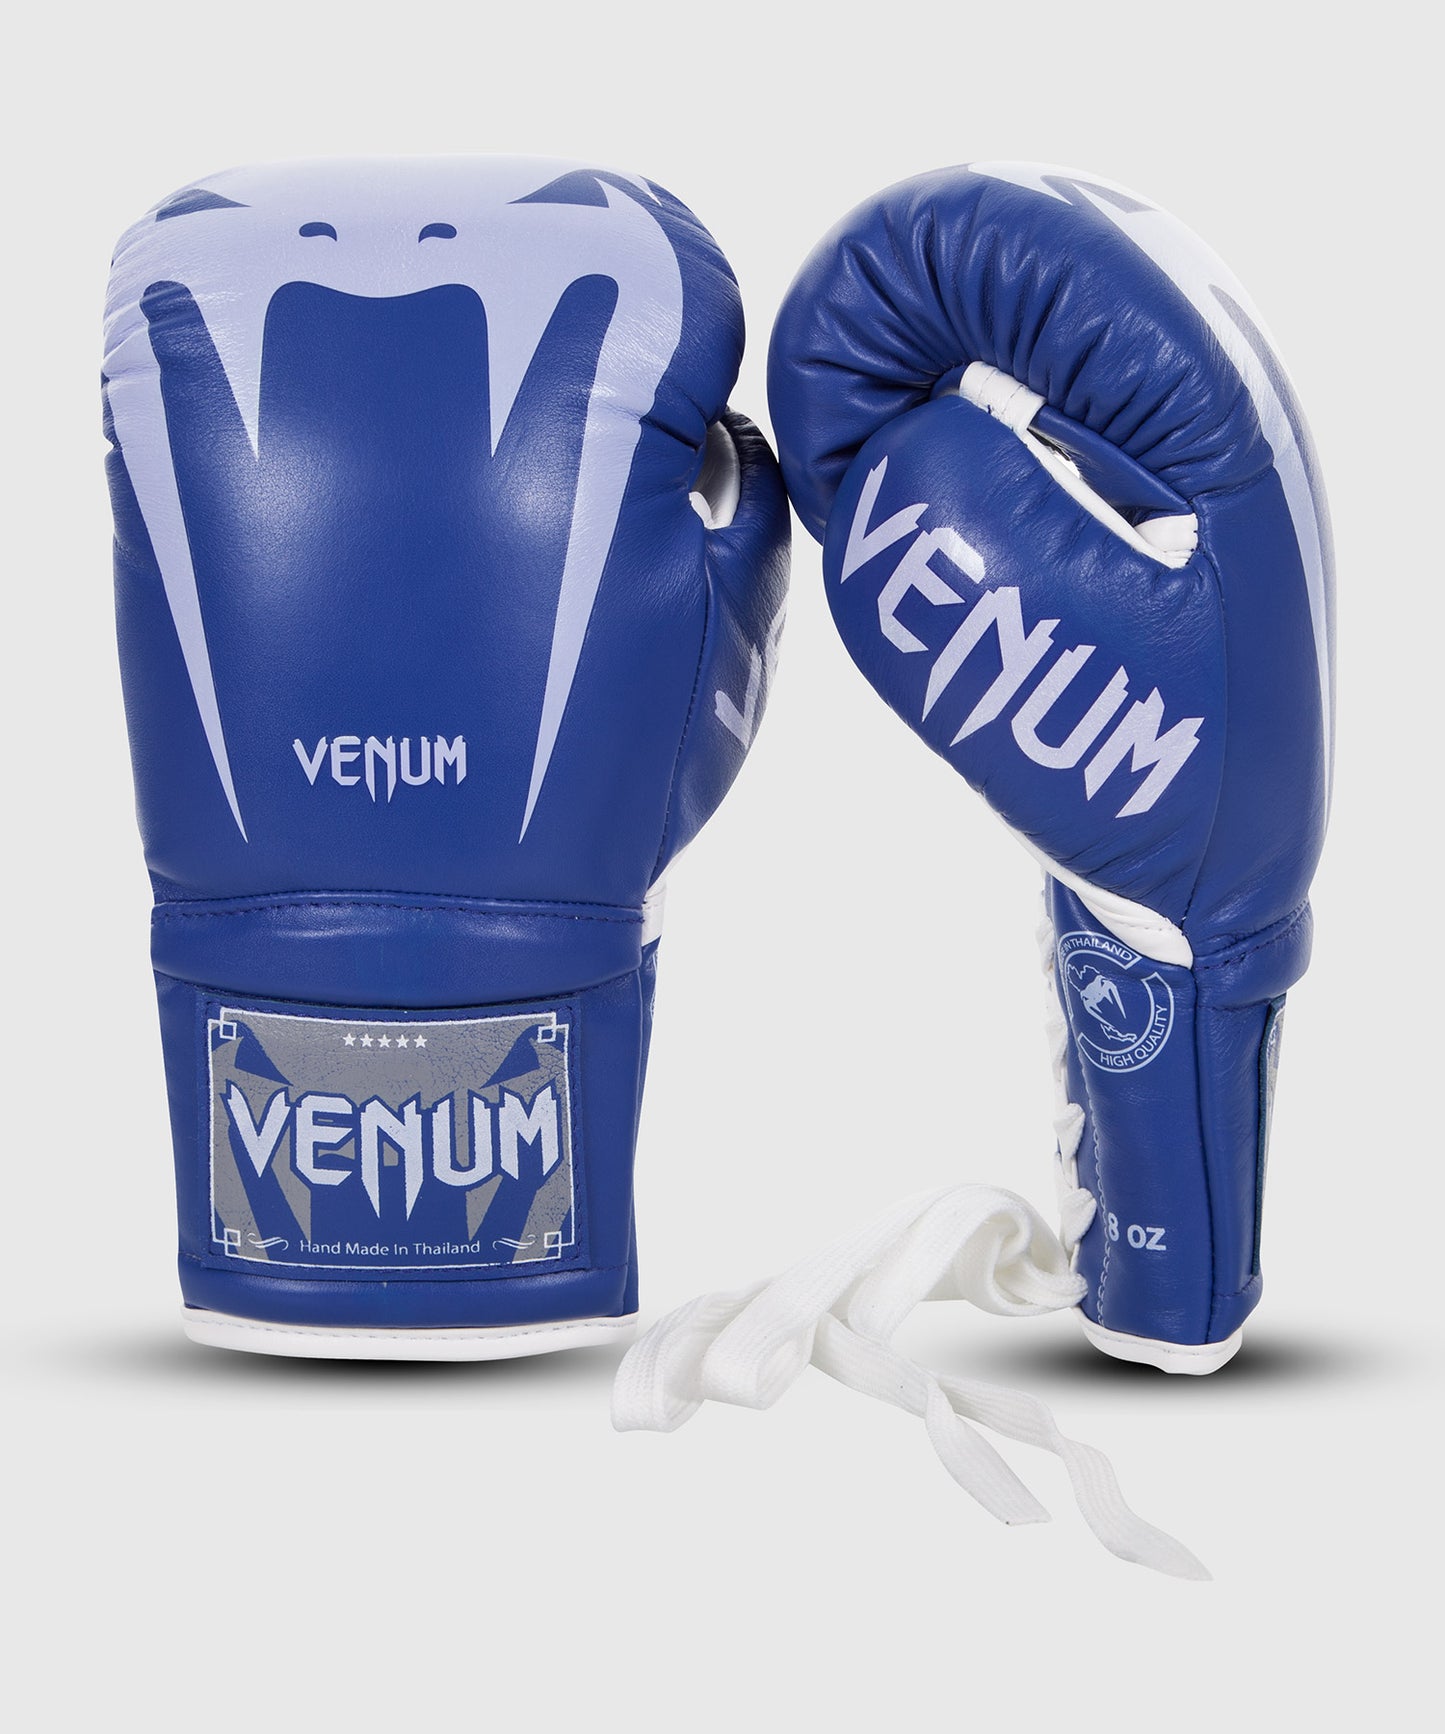 Venum Giant 3.0 Boxhandschuhe - Nappaleder - Mit Schnürung - Blau